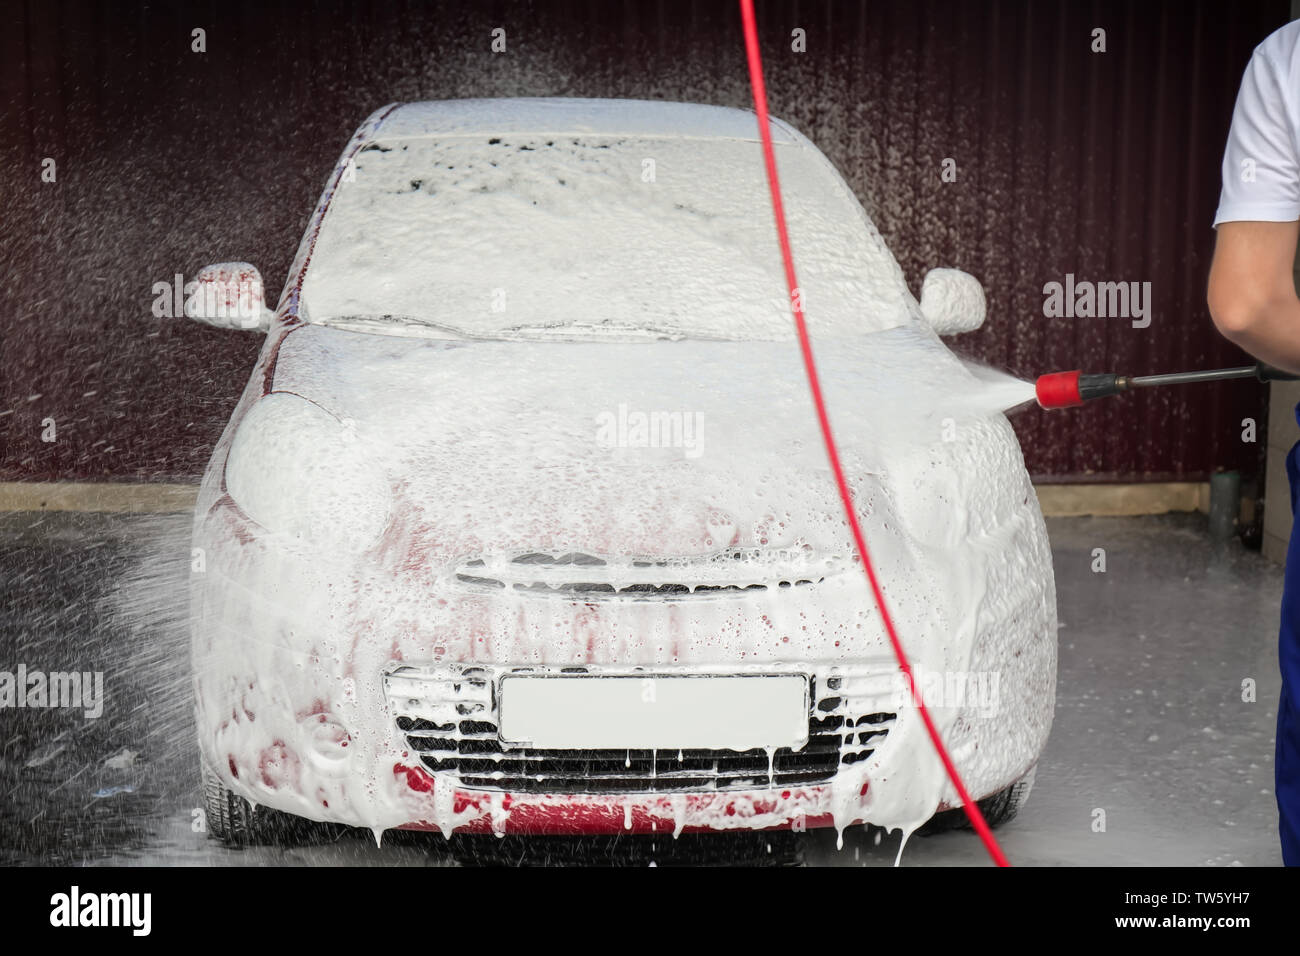 Automobile nettoyage avec de l'eau à haute pression lavage de voiture Banque D'Images